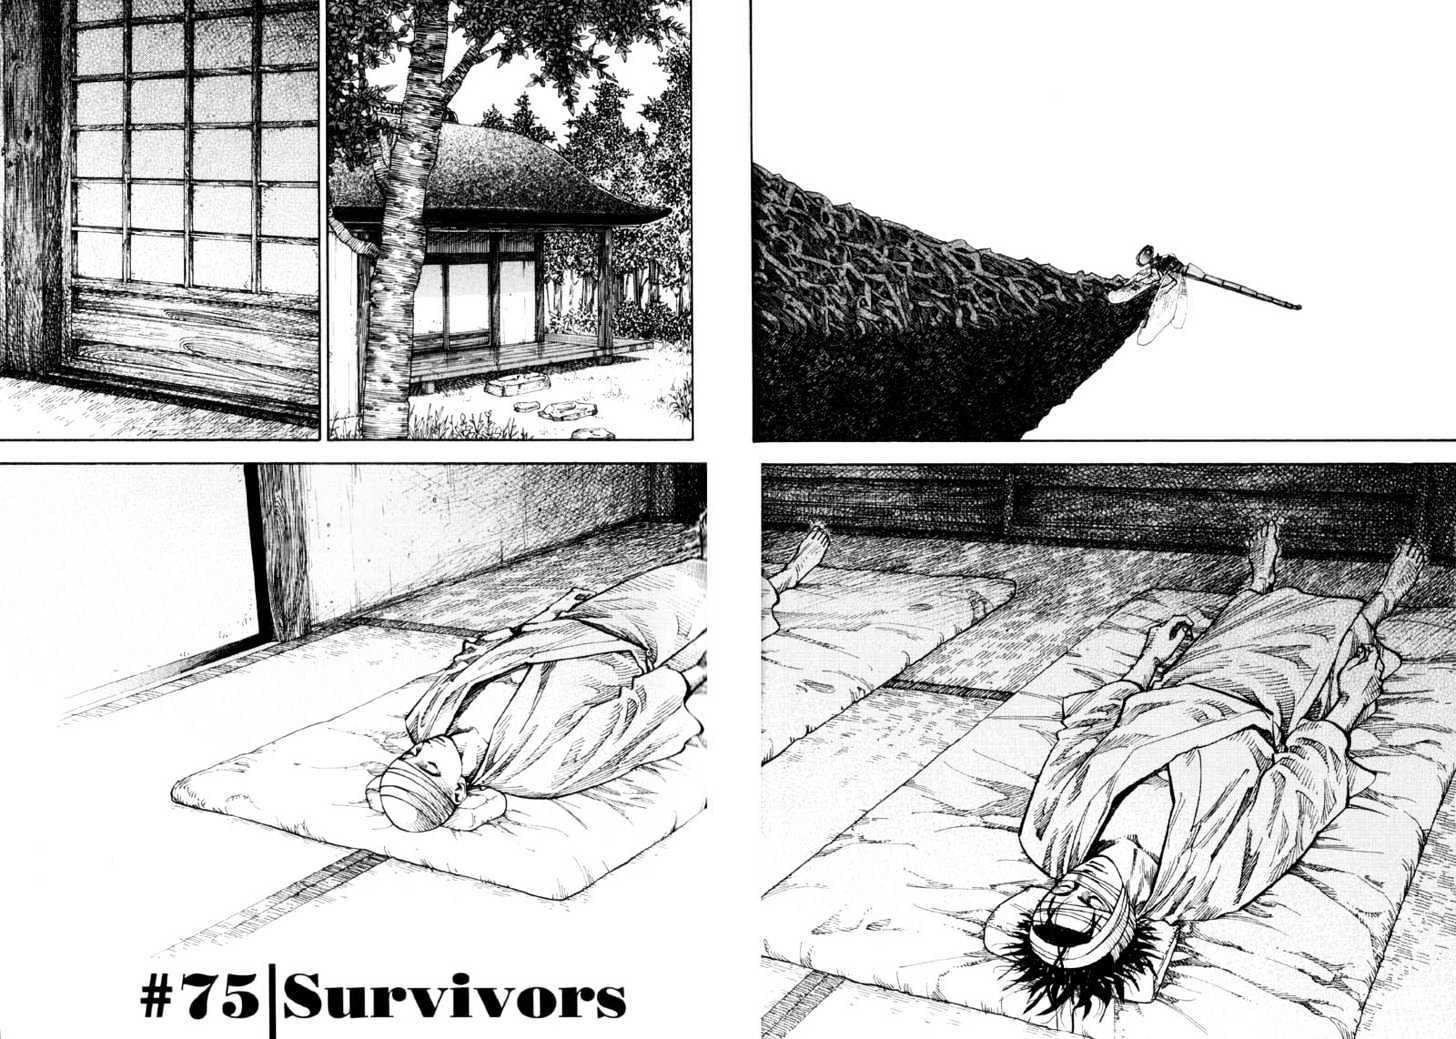 Vagabond Vol.8 Chapter 75 : Survivors page 4 - Mangakakalot